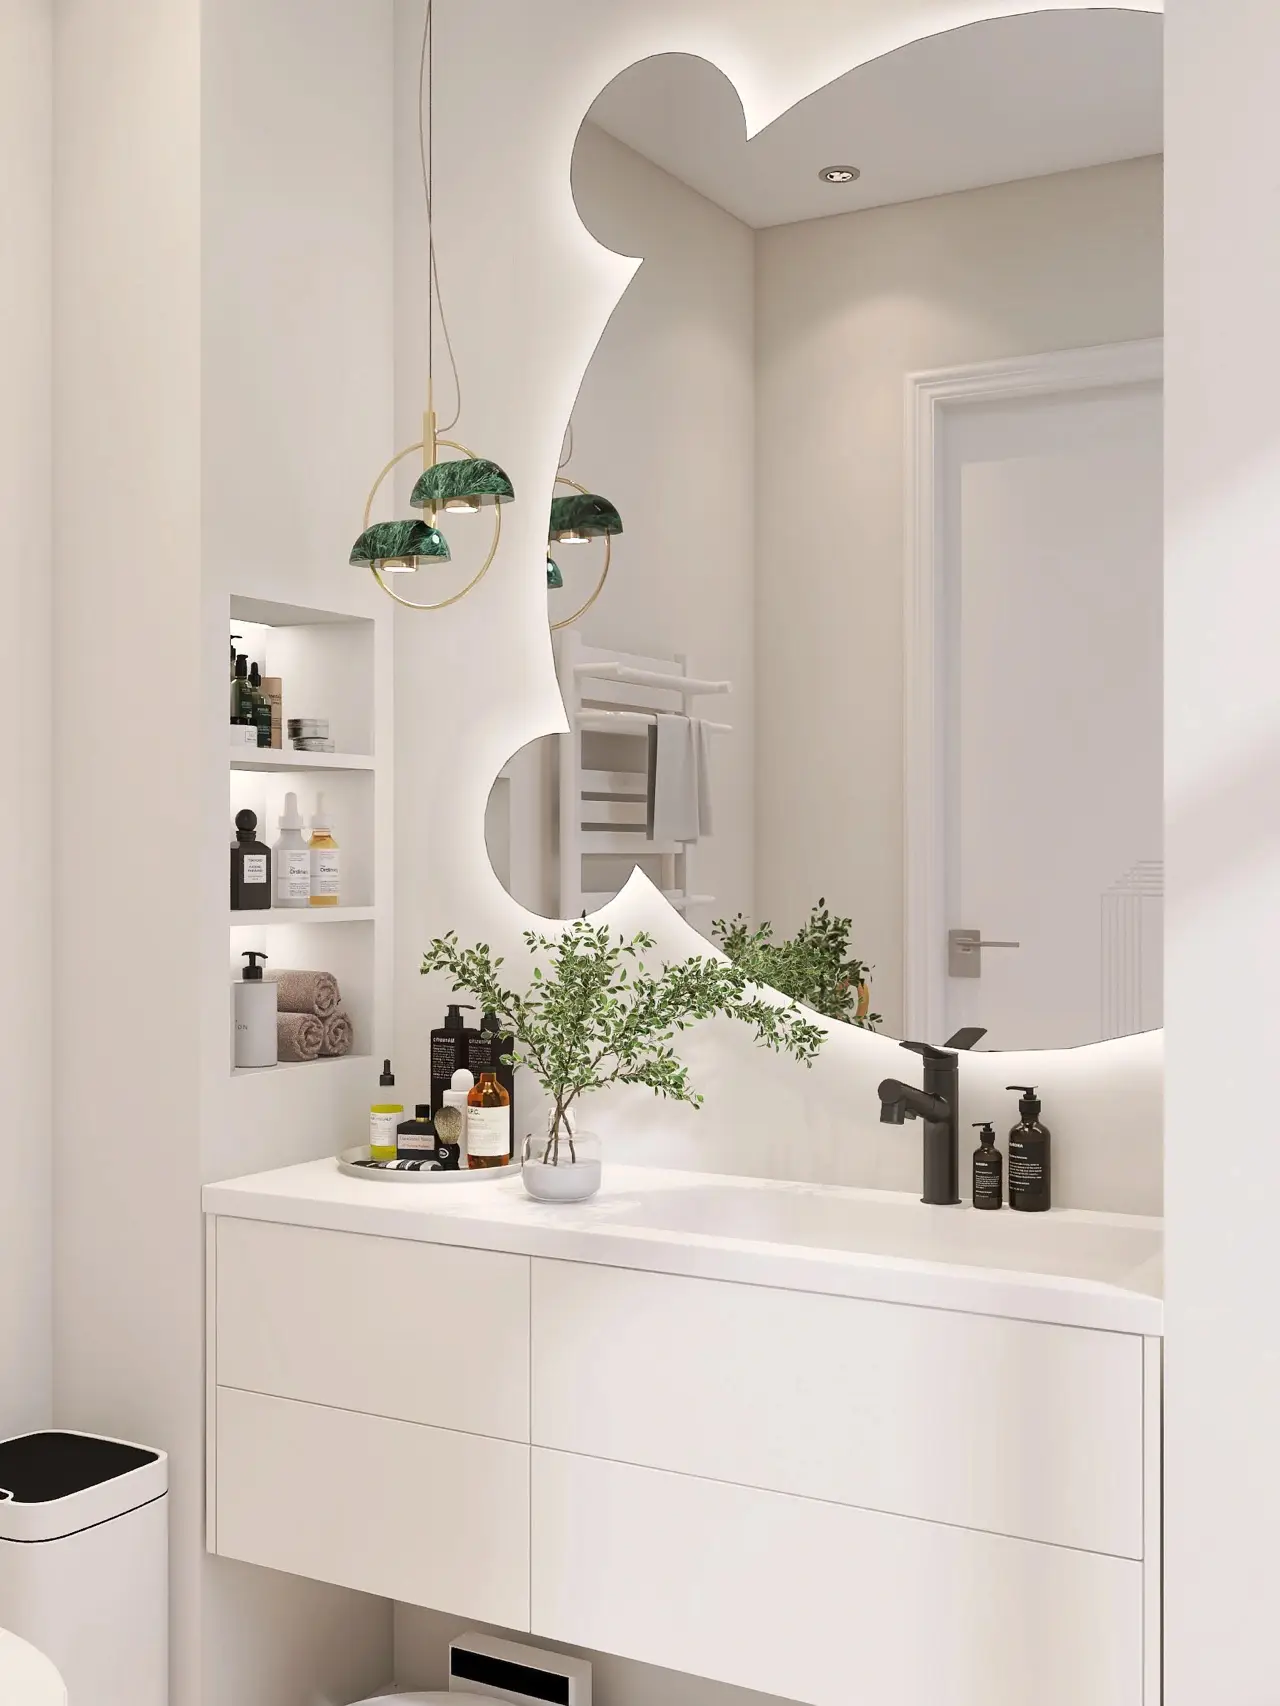 シンプルなスタイルのバスルームの装飾、かわいい熊の鏡 | 要子が投稿したフォトブック | Lemon8